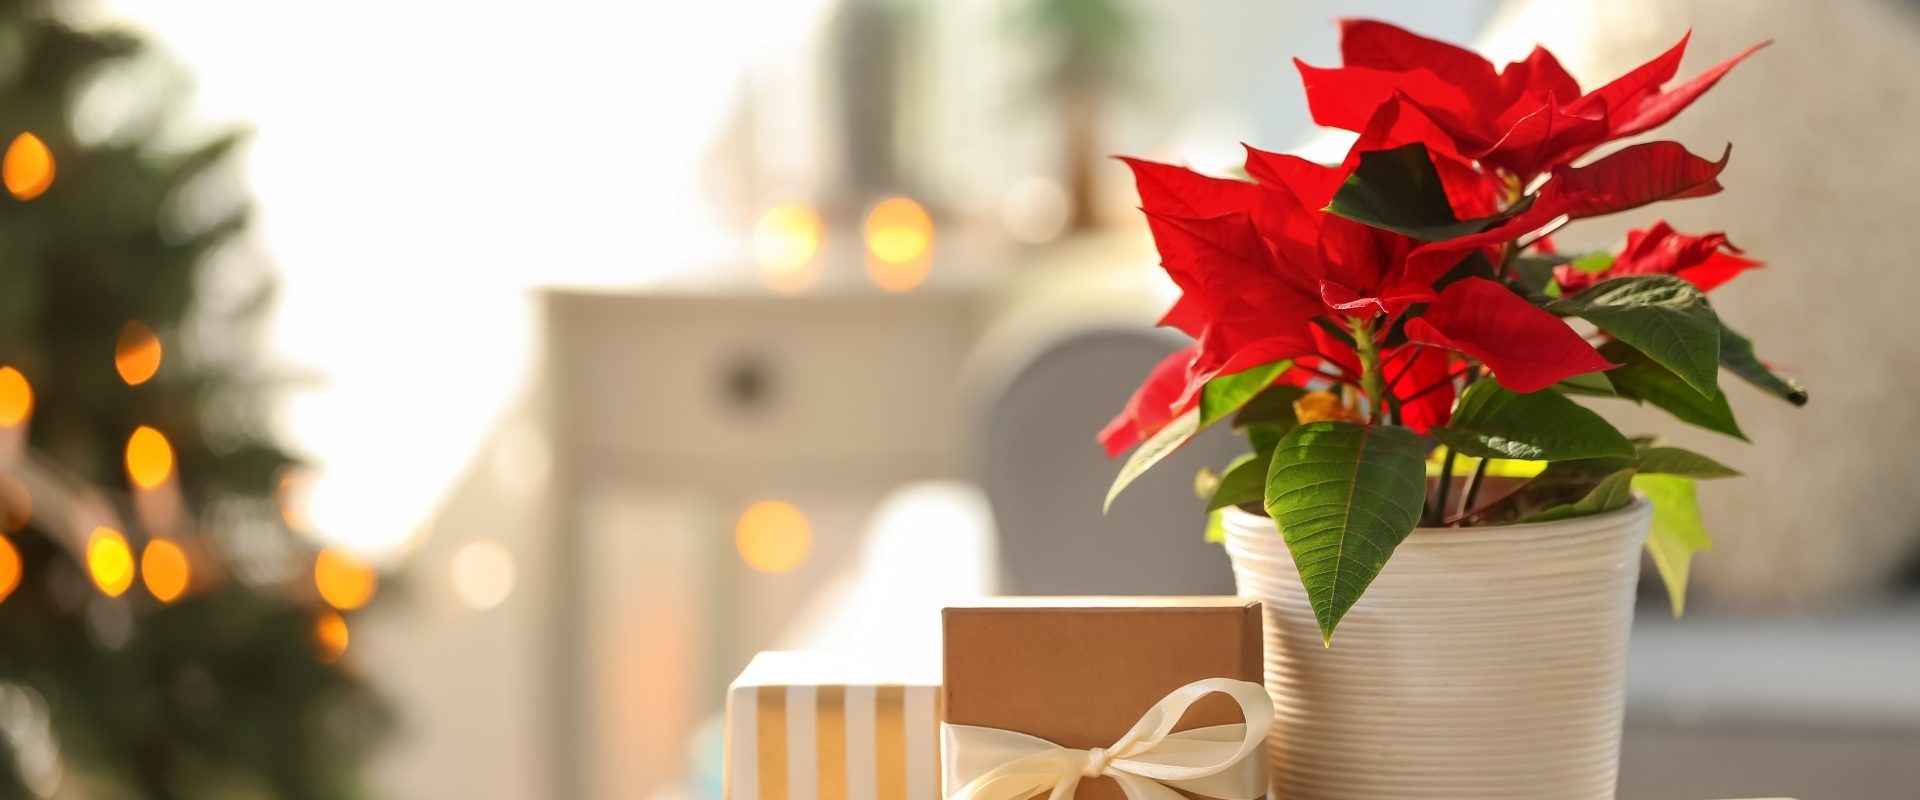 Jak pielęgnować gwiazdę betlejemską? Poinsecja w świątecznym entourage'u stoi na drewnianym stole obok zapakowanych prezentów.